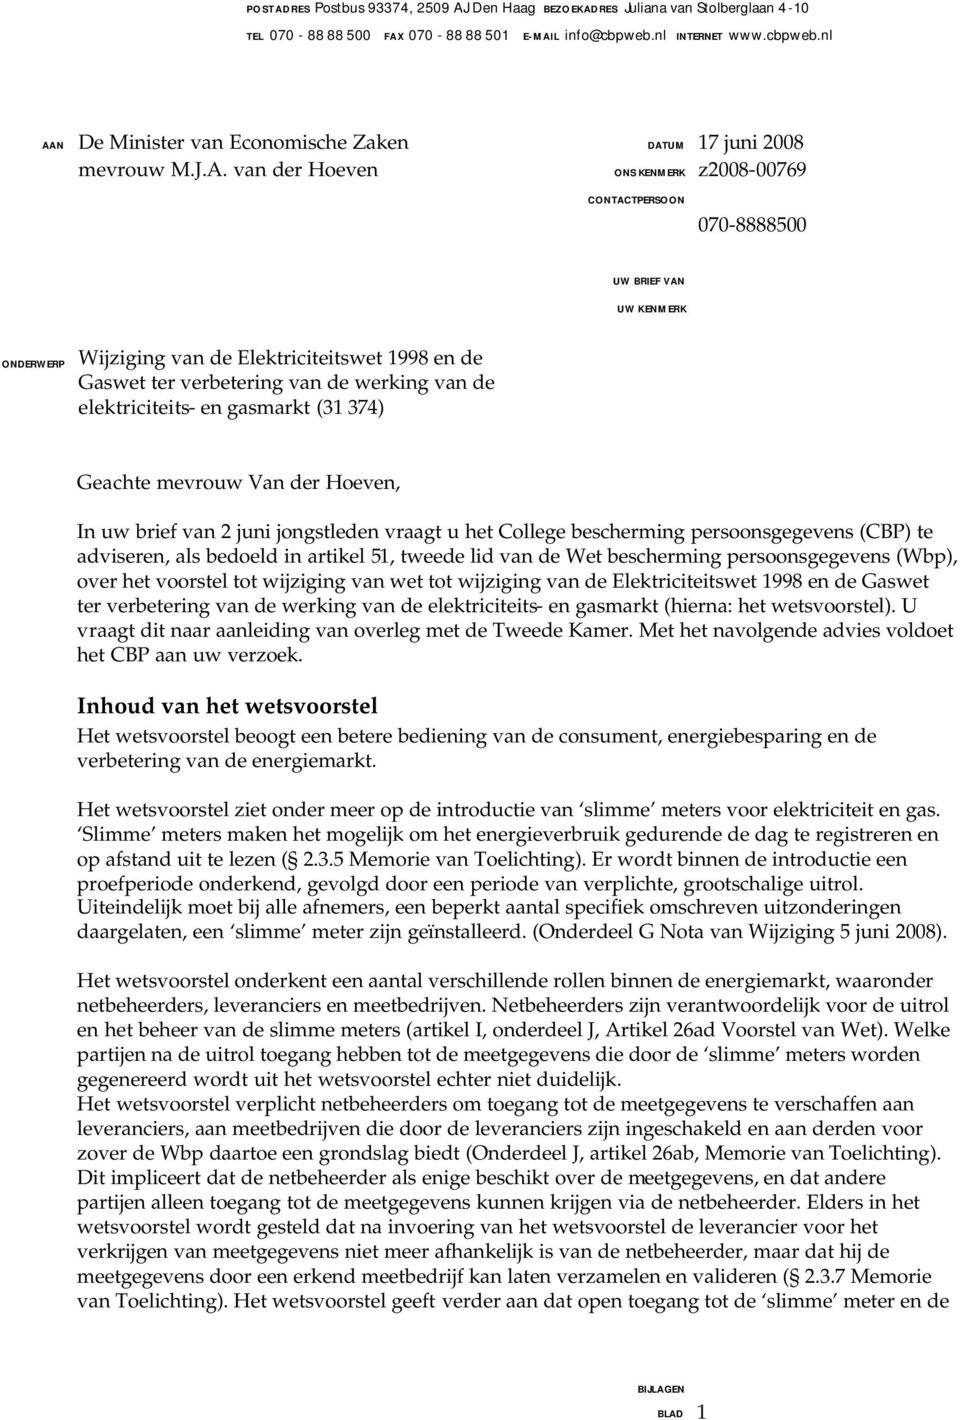 elektriciteits- en gasmarkt (31 374) Geachte mevrouw Van der Hoeven, In uw brief van 2 juni jongstleden vraagt u het College bescherming persoonsgegevens (CBP) te adviseren, als bedoeld in artikel